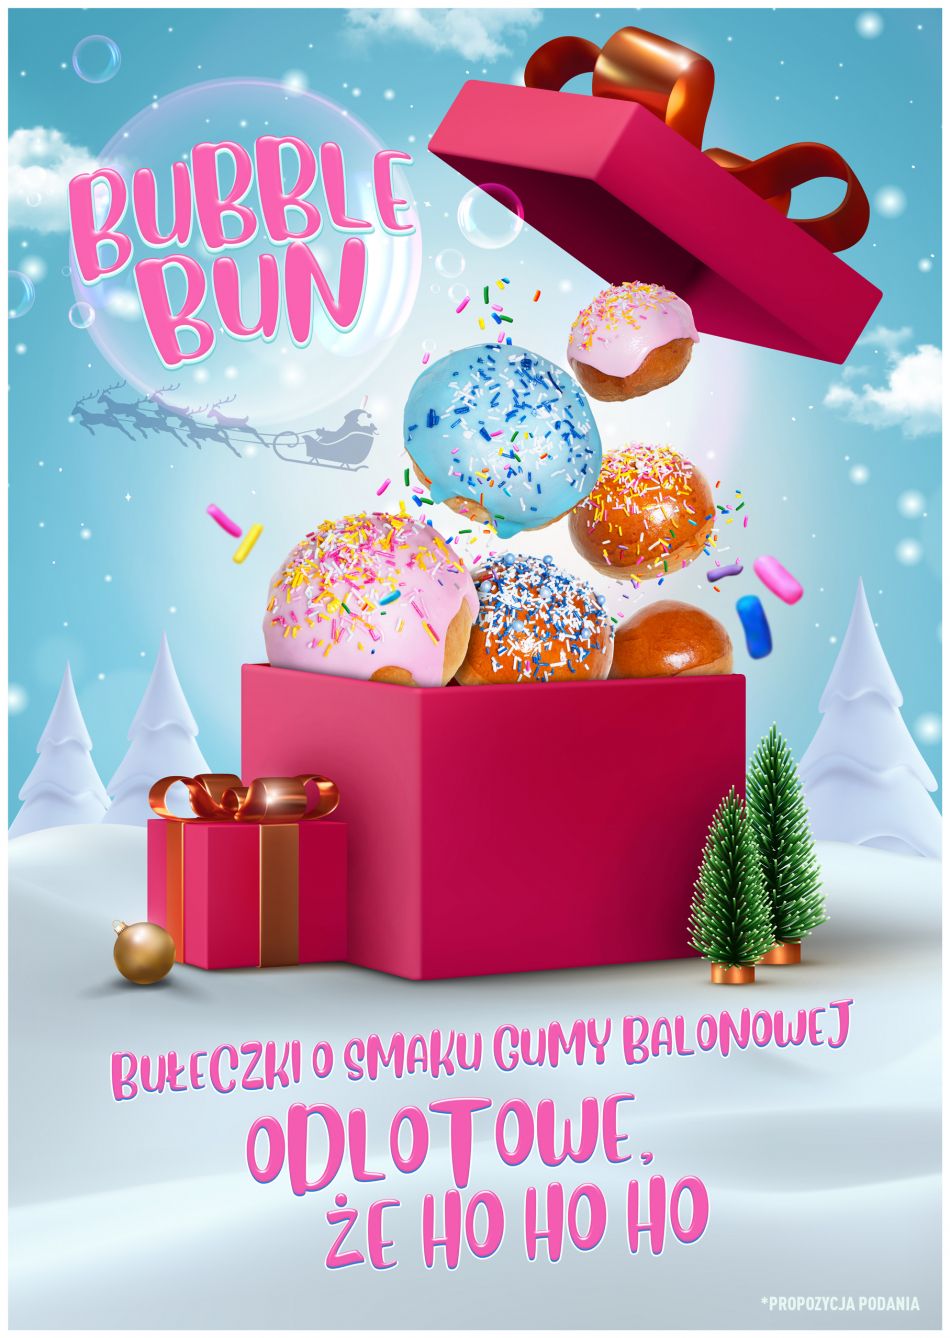 Bubble Bun – edycja świąteczna!